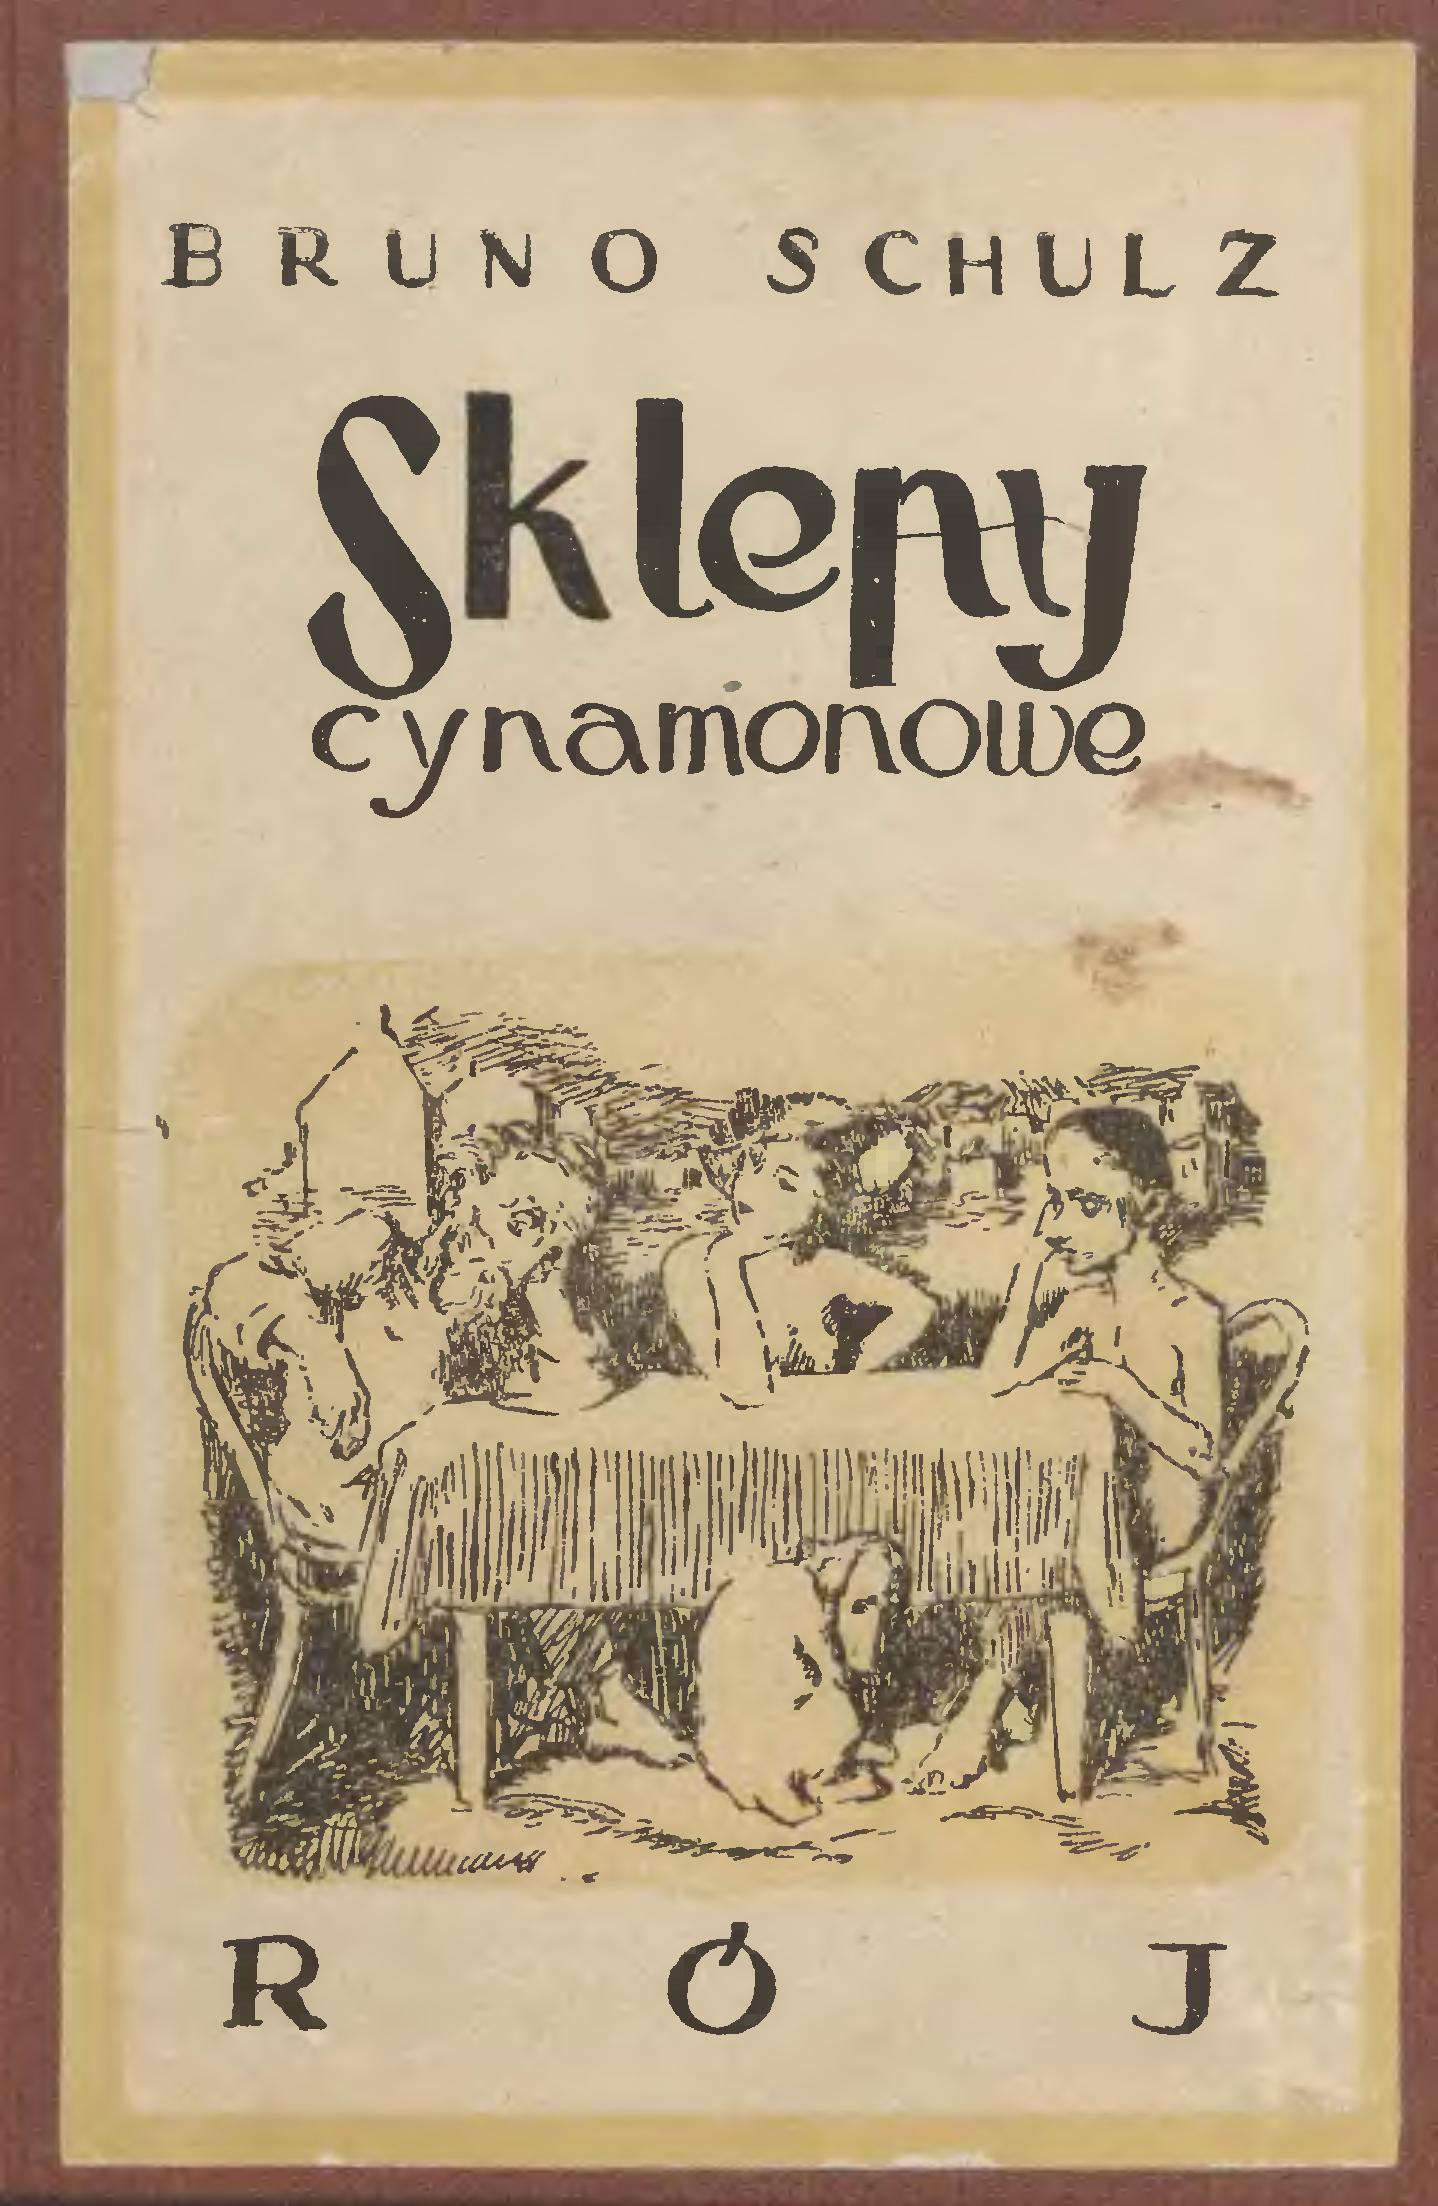 Первое издание книги Б.Шульца «Коричные лавки» (Sklepy cynamonowe)